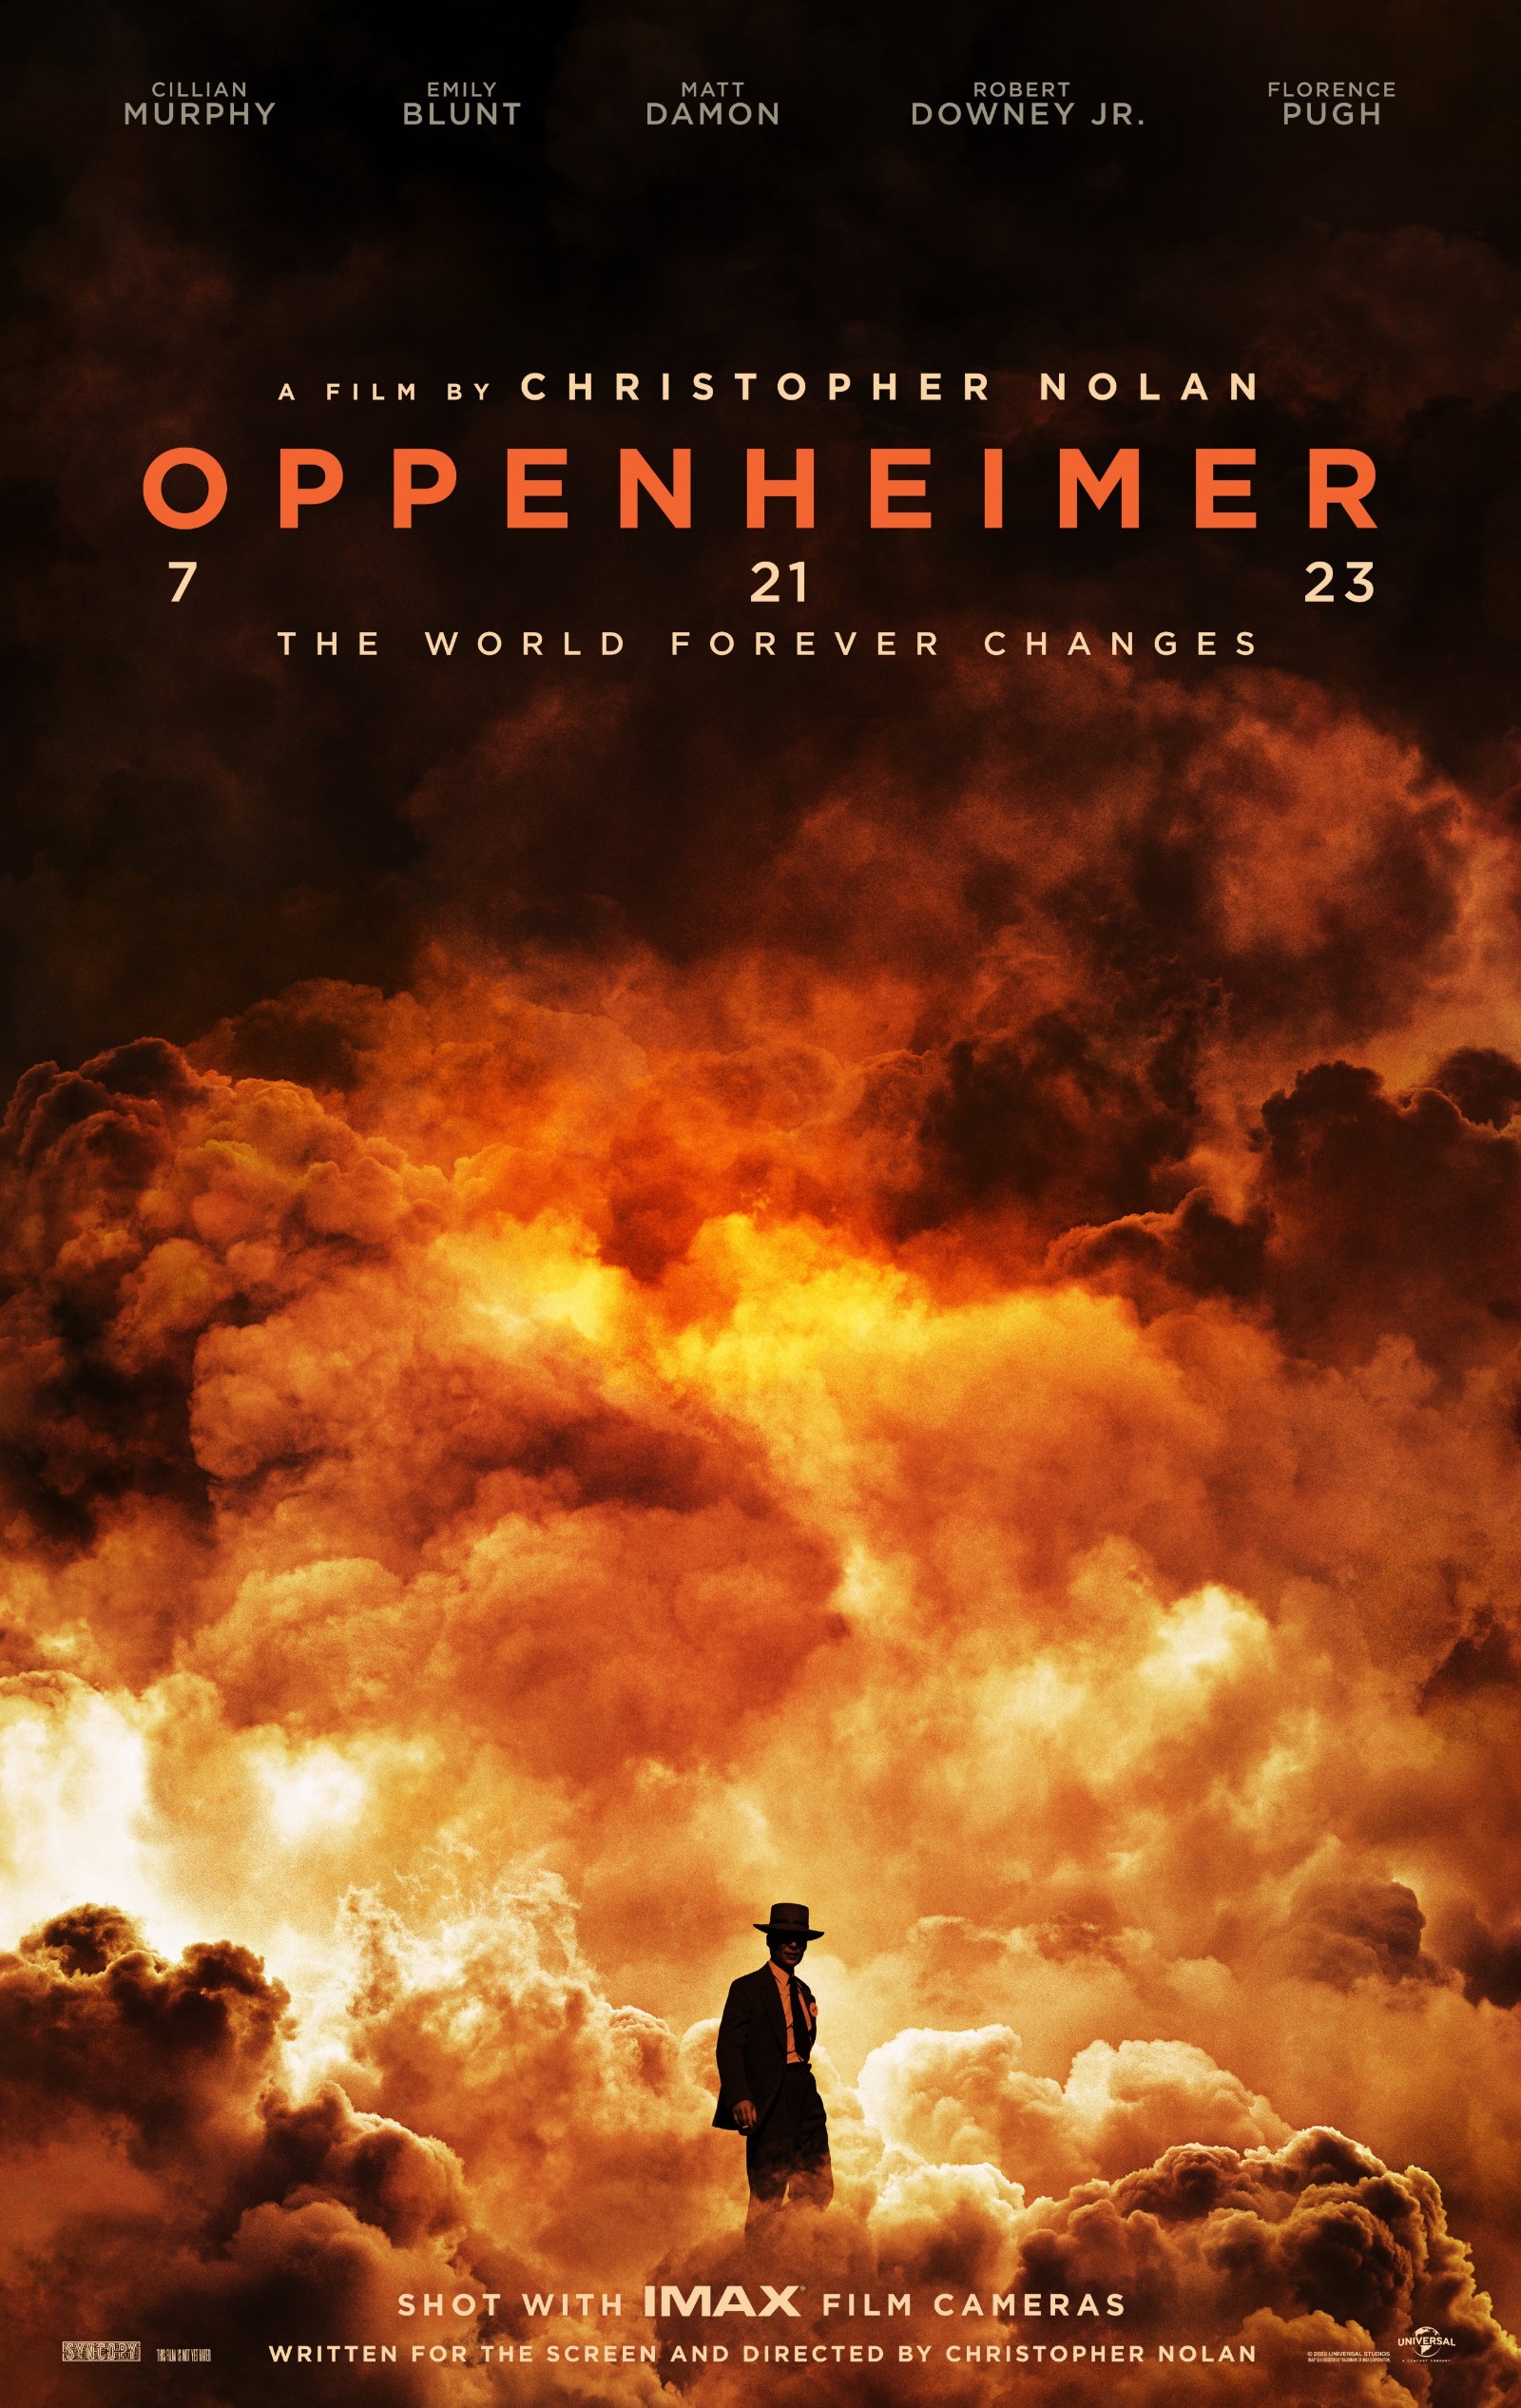 Christopher Nolan's Oppenheimer Poster. Oppenheimer is engulfed in flames.